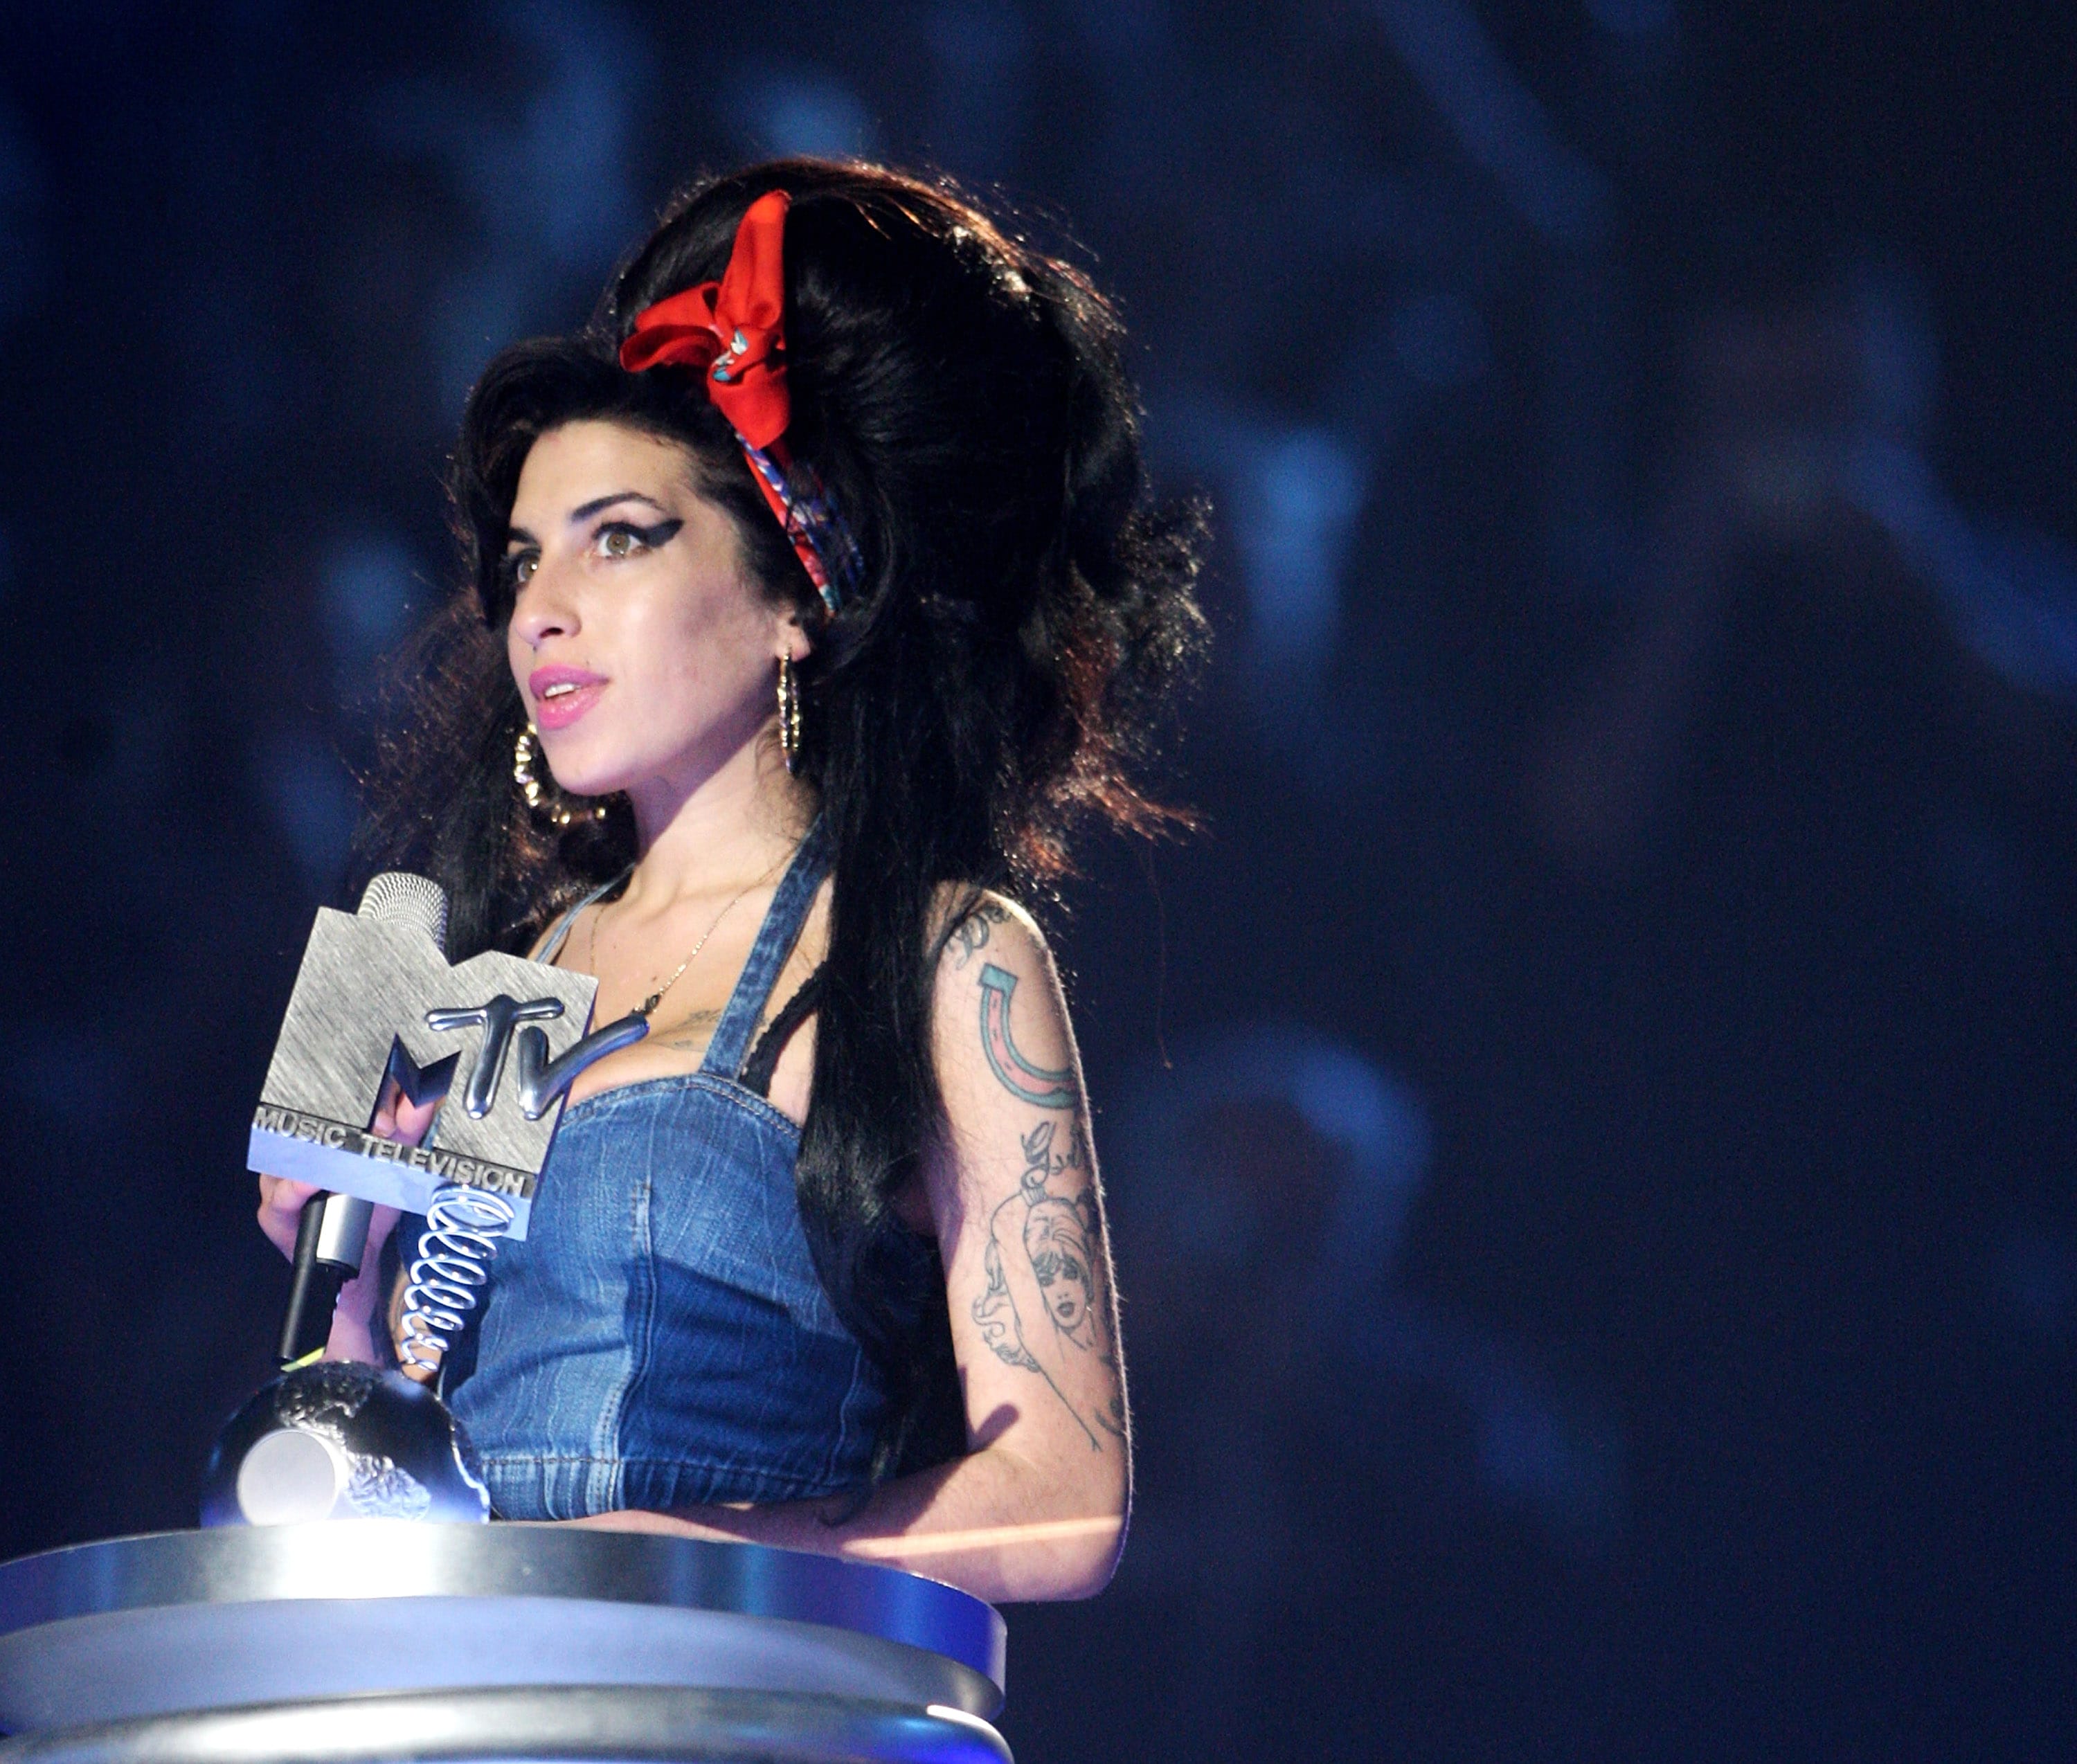 Novembre 2007. Amy Winehouse agli MTV Europe Music Awards a Monaco. Ha appena vinto il premio come miglior artista